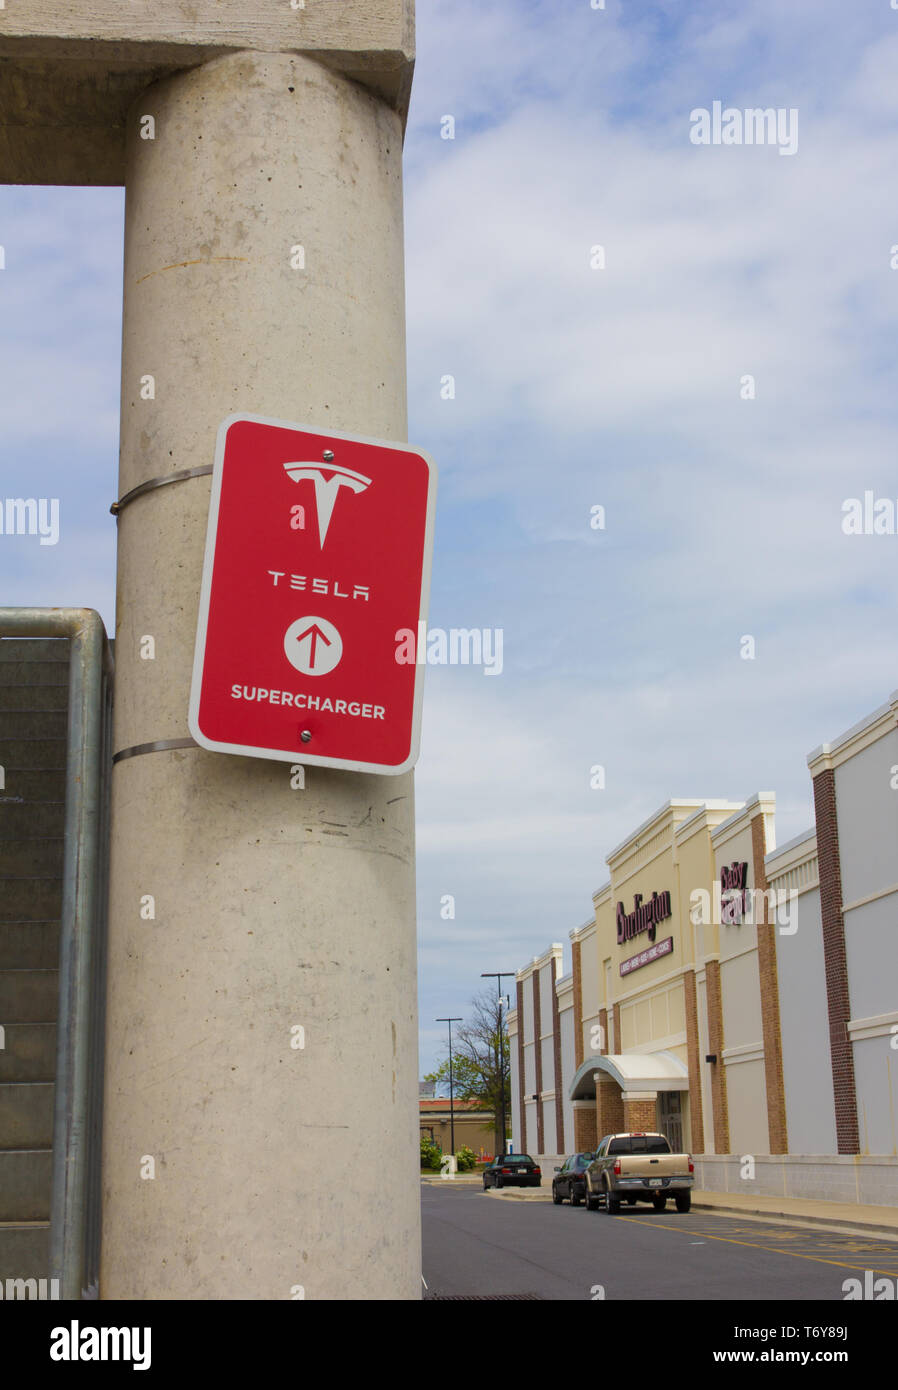 En mai 2019, il est annoncé que Tesla, Inc. co-fondateur/PDG Elon Musk a été l'un des gagnants de la Médaille 2019 Stephen Hawking pour la communication scientifique. Photographié en avril 2019, dans l'orientation verticale et avec divers magasins de l'arrière-plan à l'Towne Center at Laurel centre commercial/centre à Laurel, Maryland, USA, un 'rouge' Supercharger Tesla signe avec le logo sur un pilier du garage/parking à étages où les stations de recharge sont disponibles pour l'entreprise automobile basé en Californie, les véhicules électriques. En mai 2019, Tesla avait plus de 1 440 stations dans le monde entier. Supercharger Banque D'Images